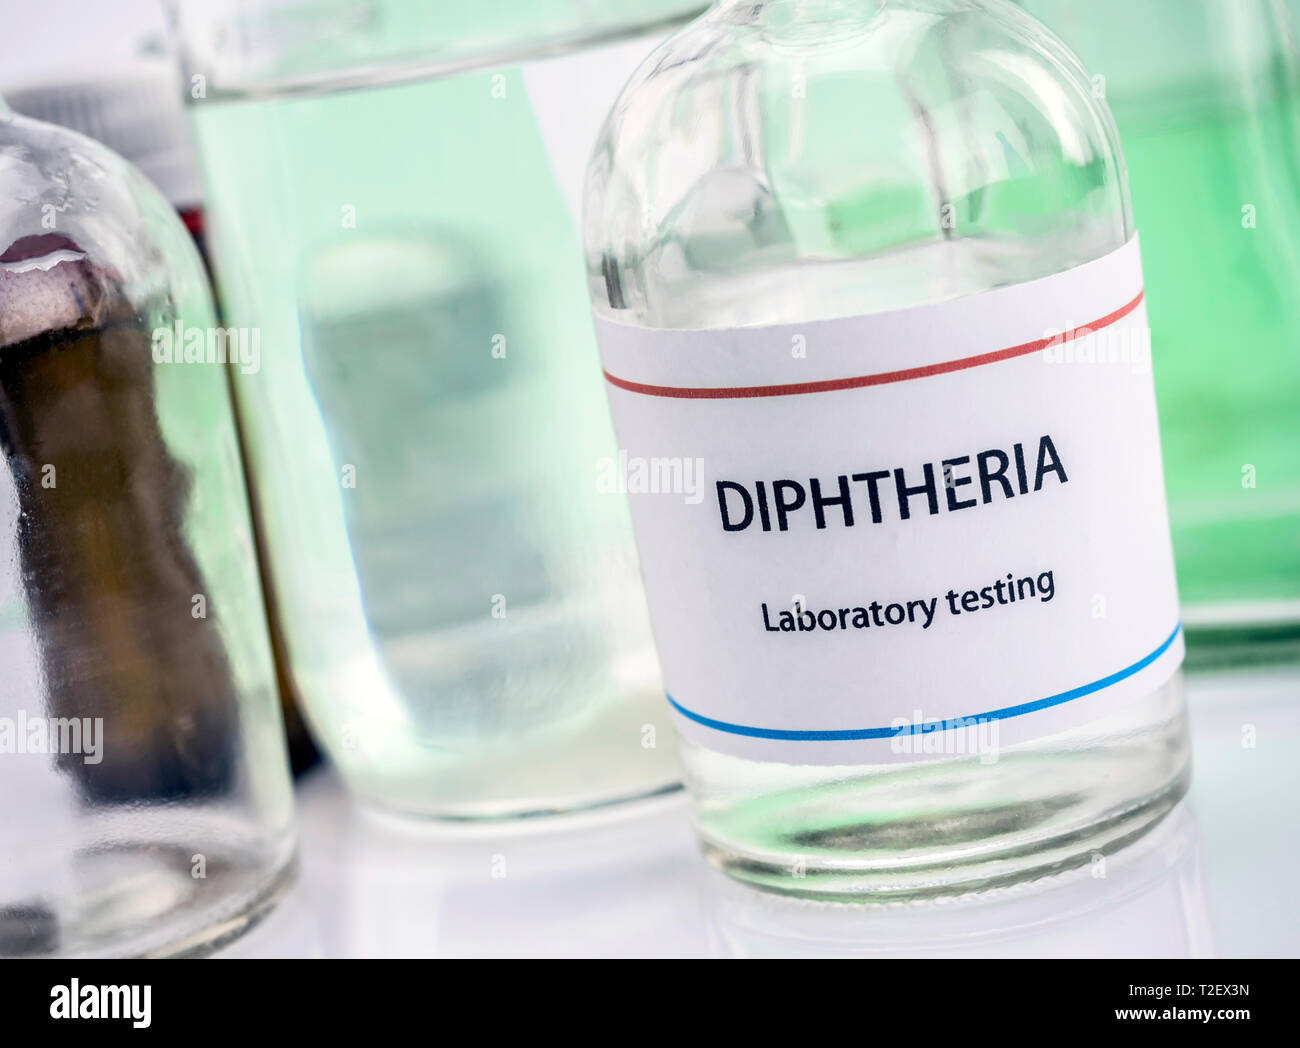 Pruebas en laboratorio, la difteria, la composición horizontal de la imagen conceptual Foto de stock